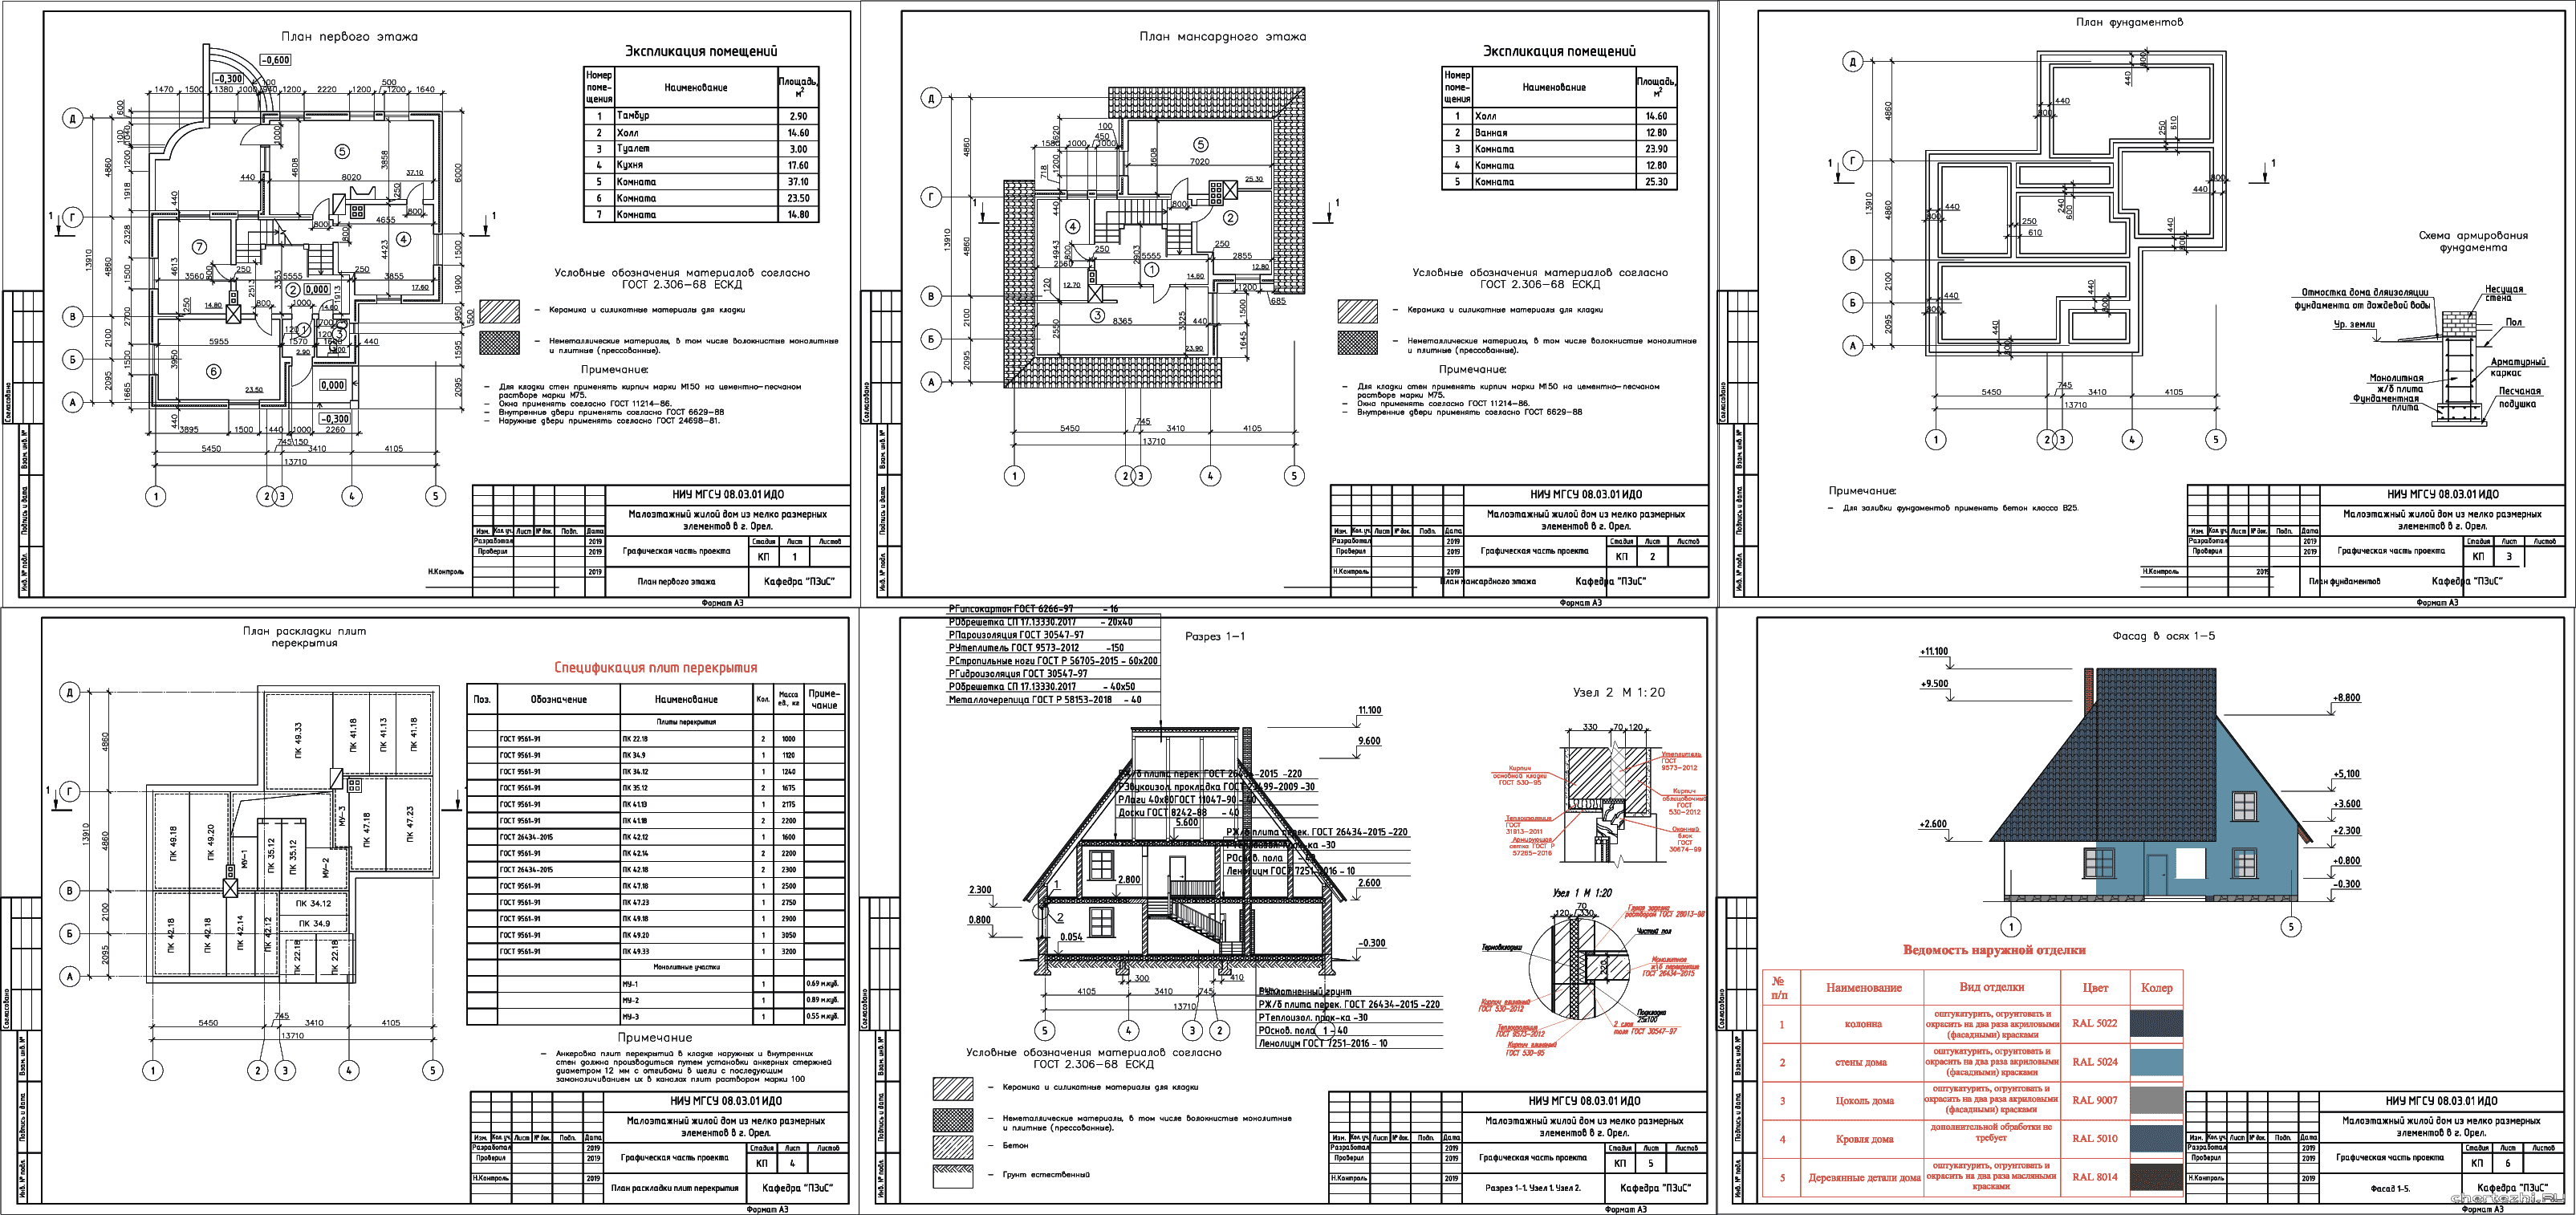 Курсовой проект - Одноэтажный коттедж с мансардным этажом 13,91 х 13,71 м в г. Орел